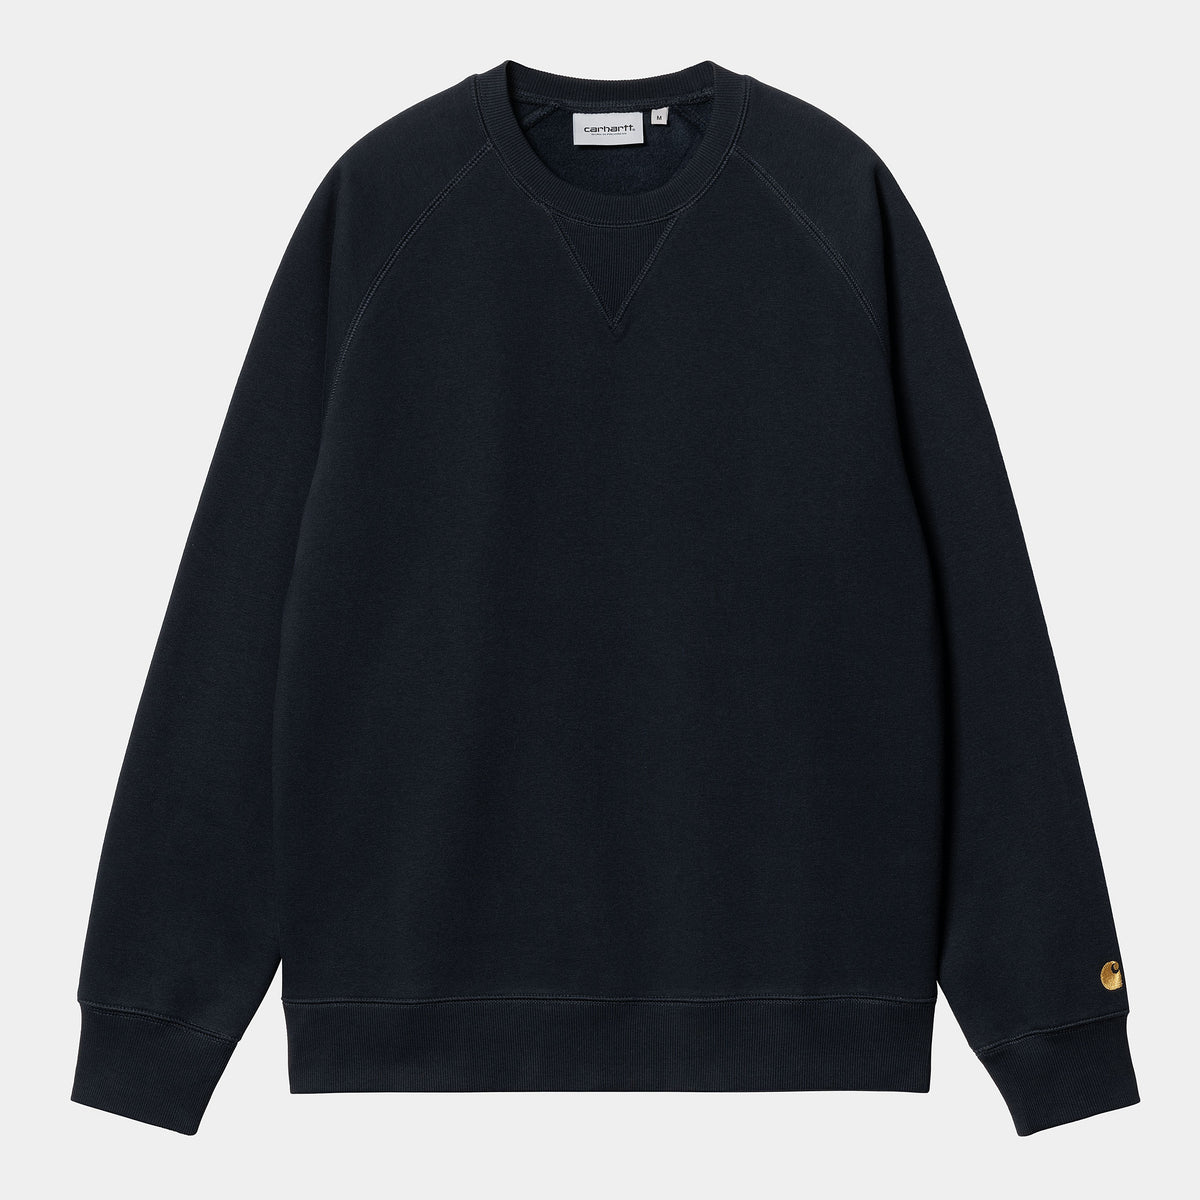 Chase Sweater Dark Navy / Gold